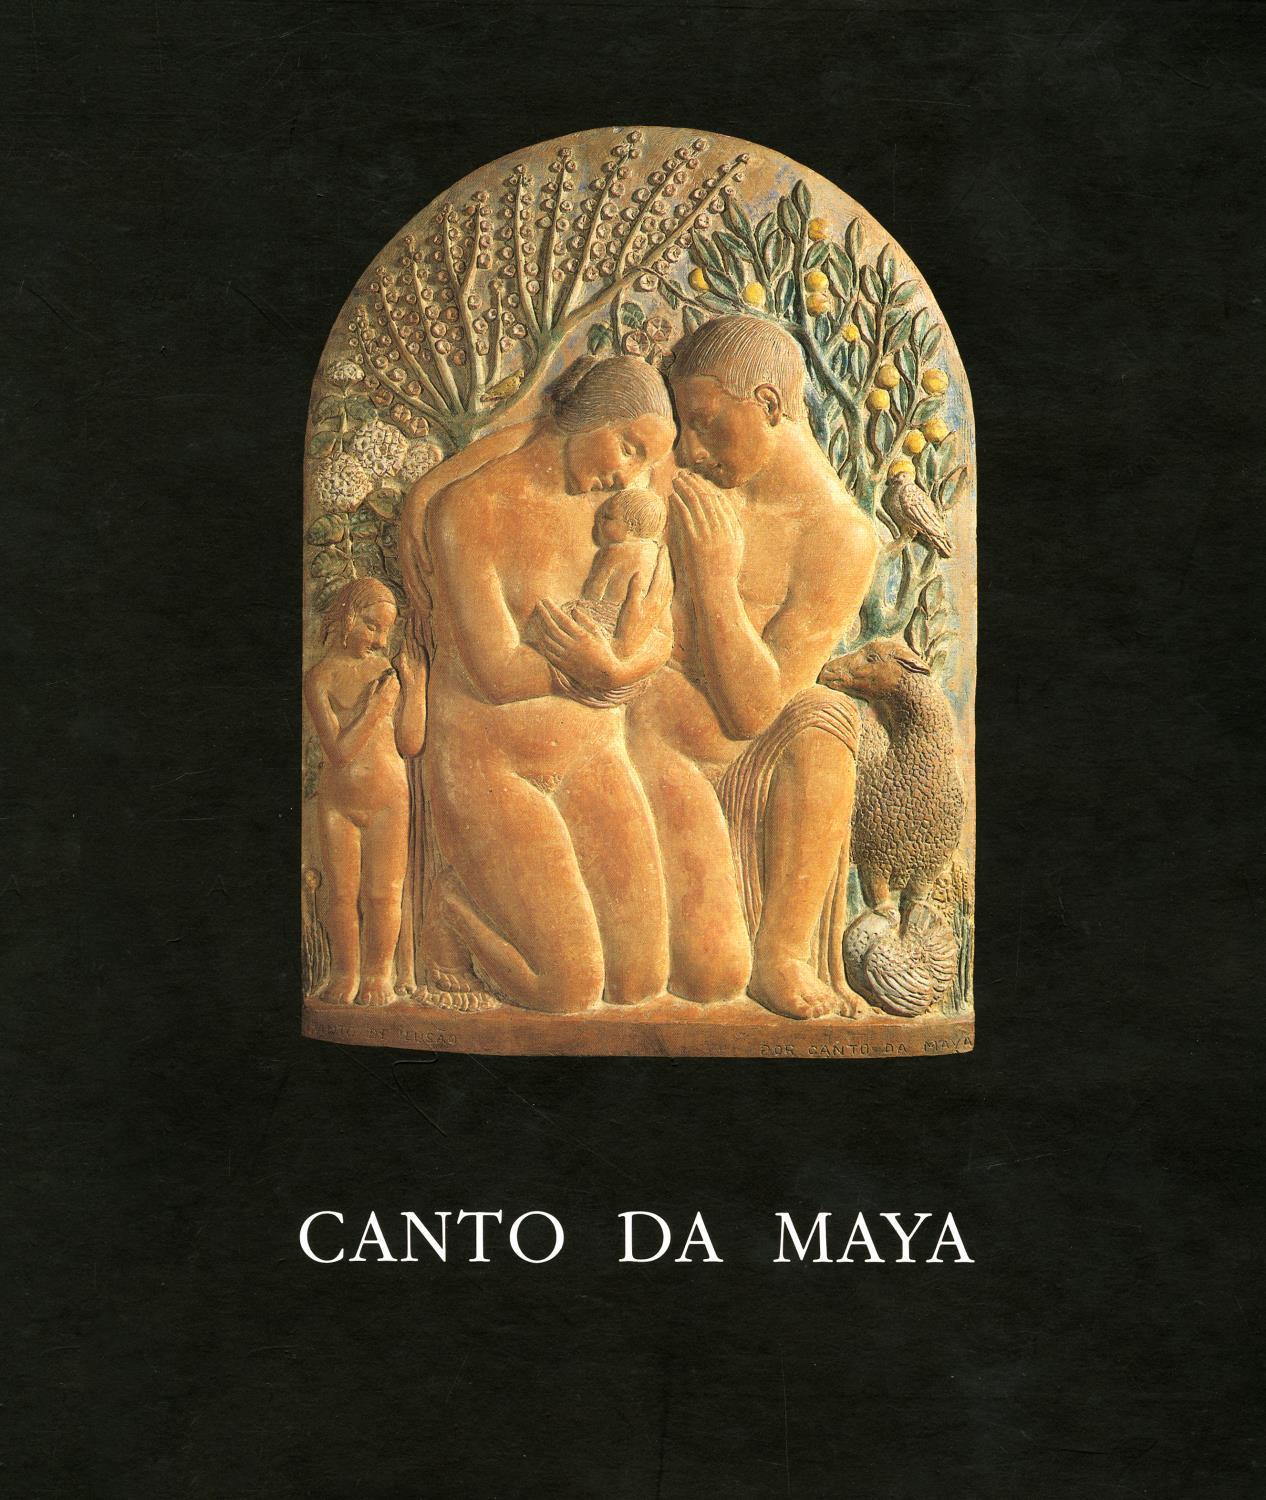 Canto da Maya